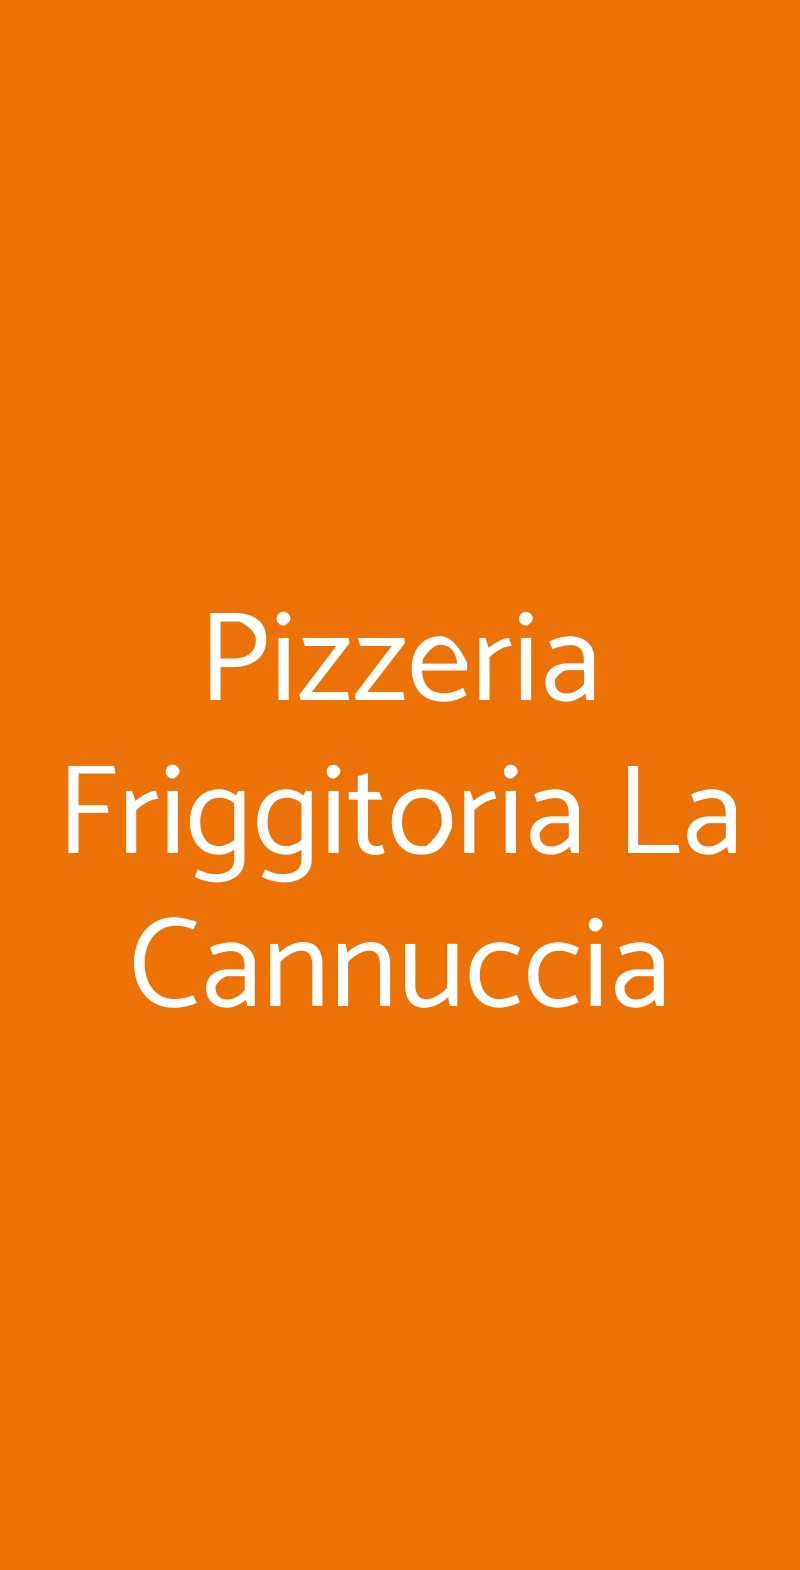 Pizzeria Friggitoria La Cannuccia Roma menù 1 pagina